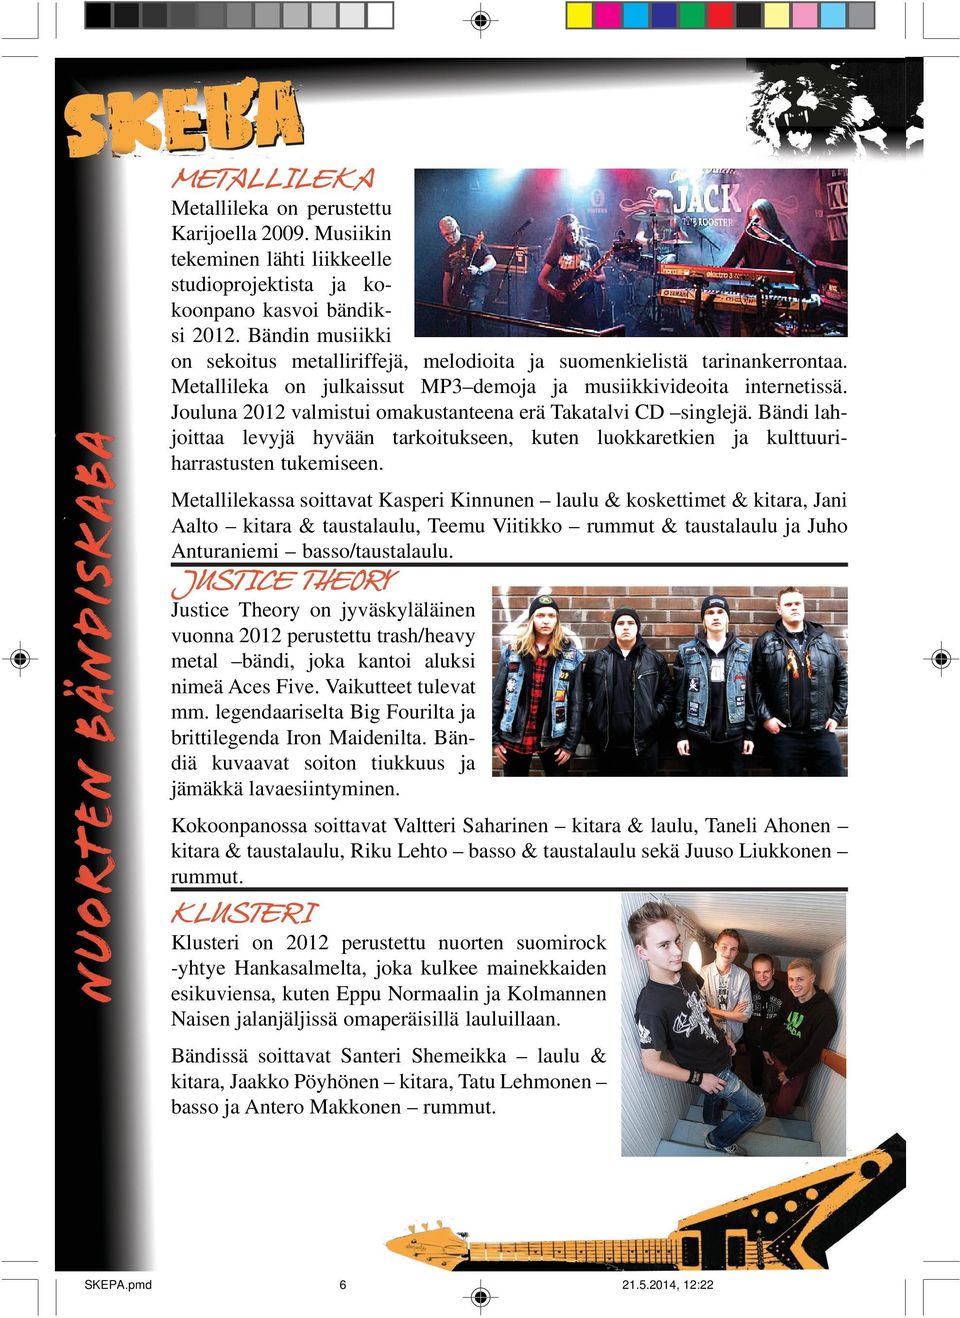 Jouluna 2012 valmistui omakustanteena erä Takatalvi CD singlejä. Bändi lahjoittaa levyjä hyvään tarkoitukseen, kuten luokkaretkien ja kulttuuriharrastusten tukemiseen.